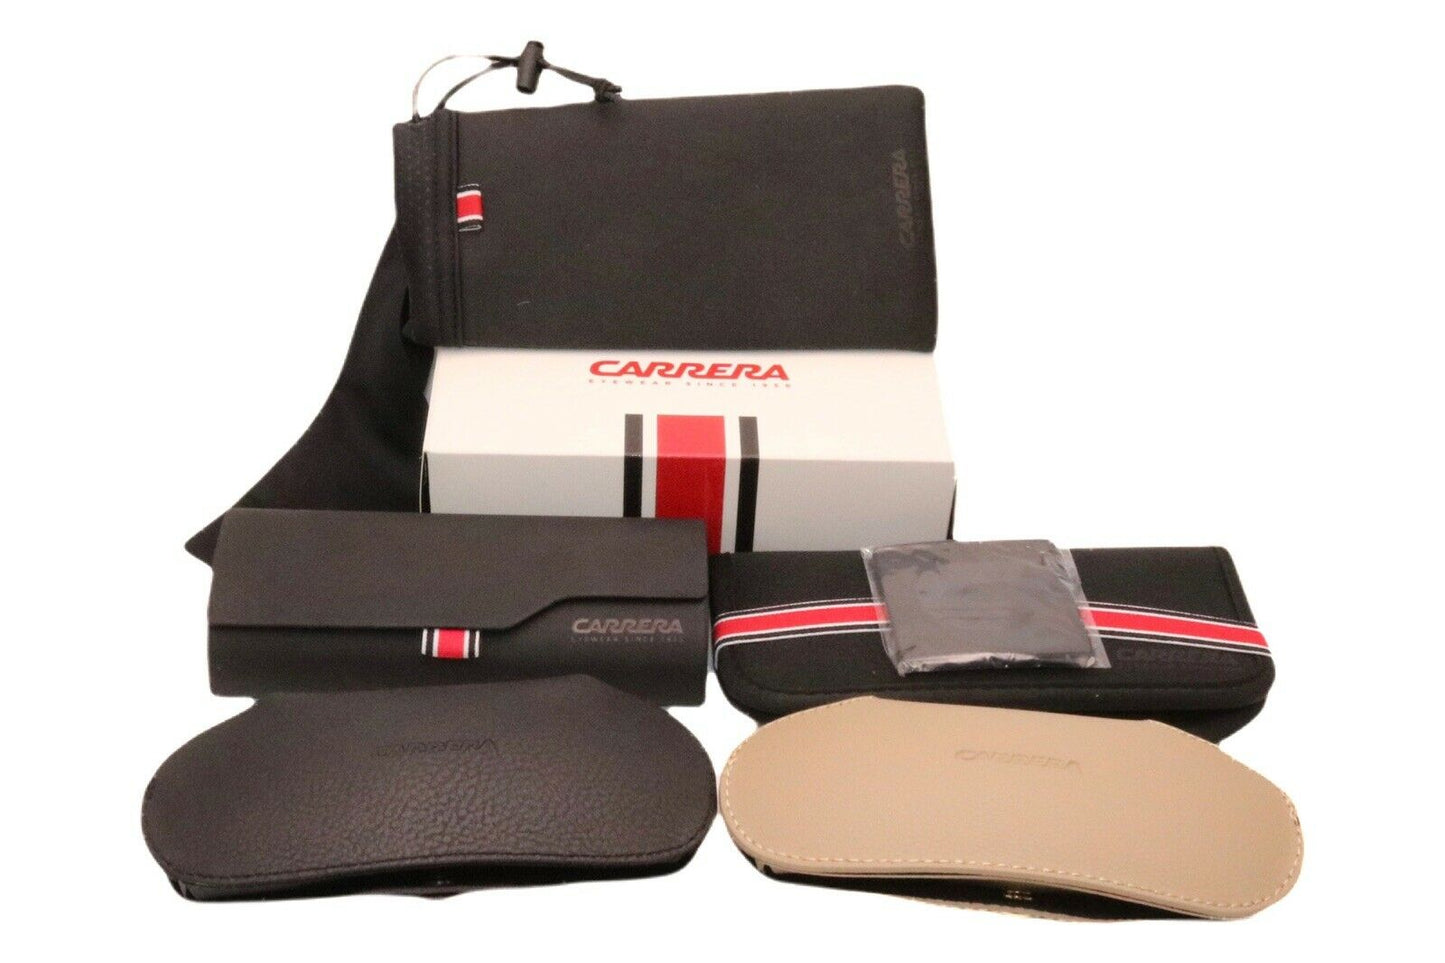 Carrera FLAGLAB 12-0000 0J 99mm New Sunglasses